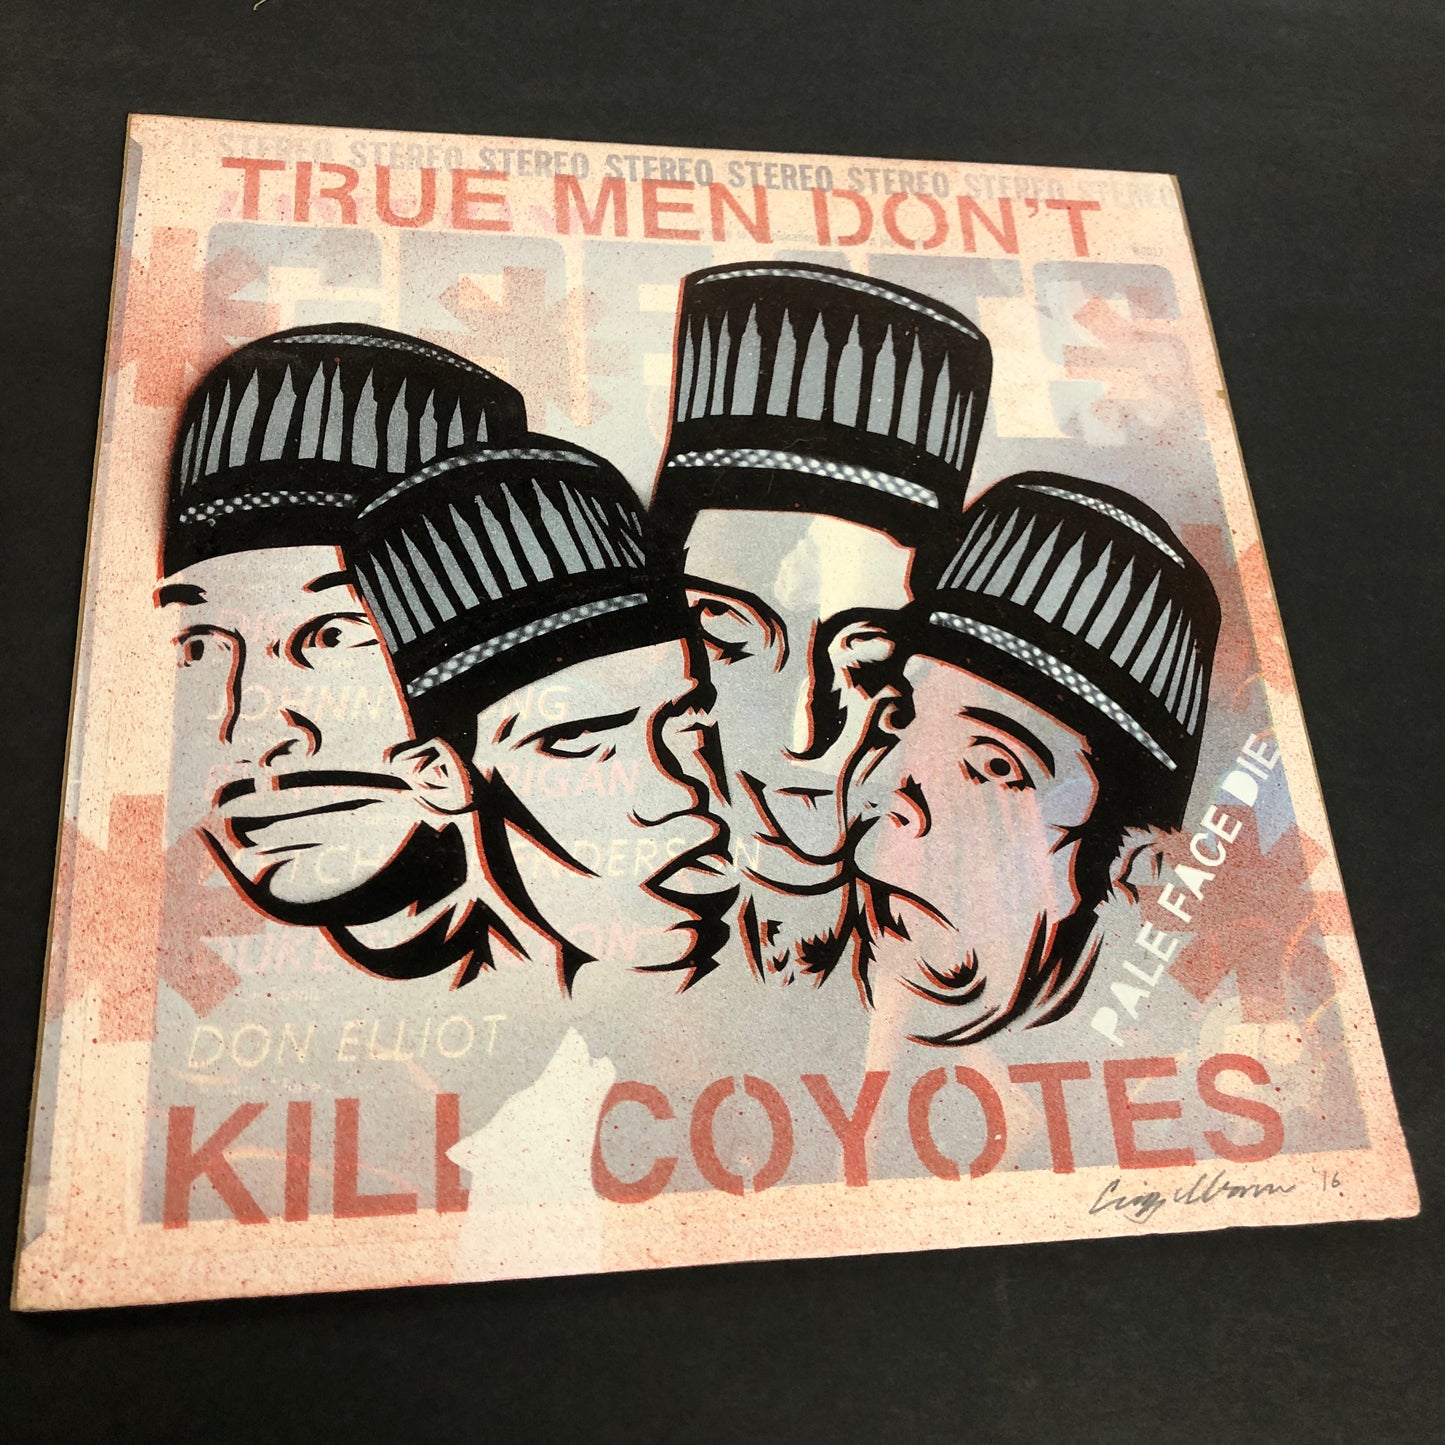 Craig Ibarra "True Men Don't Kill Coyotes' (2016)